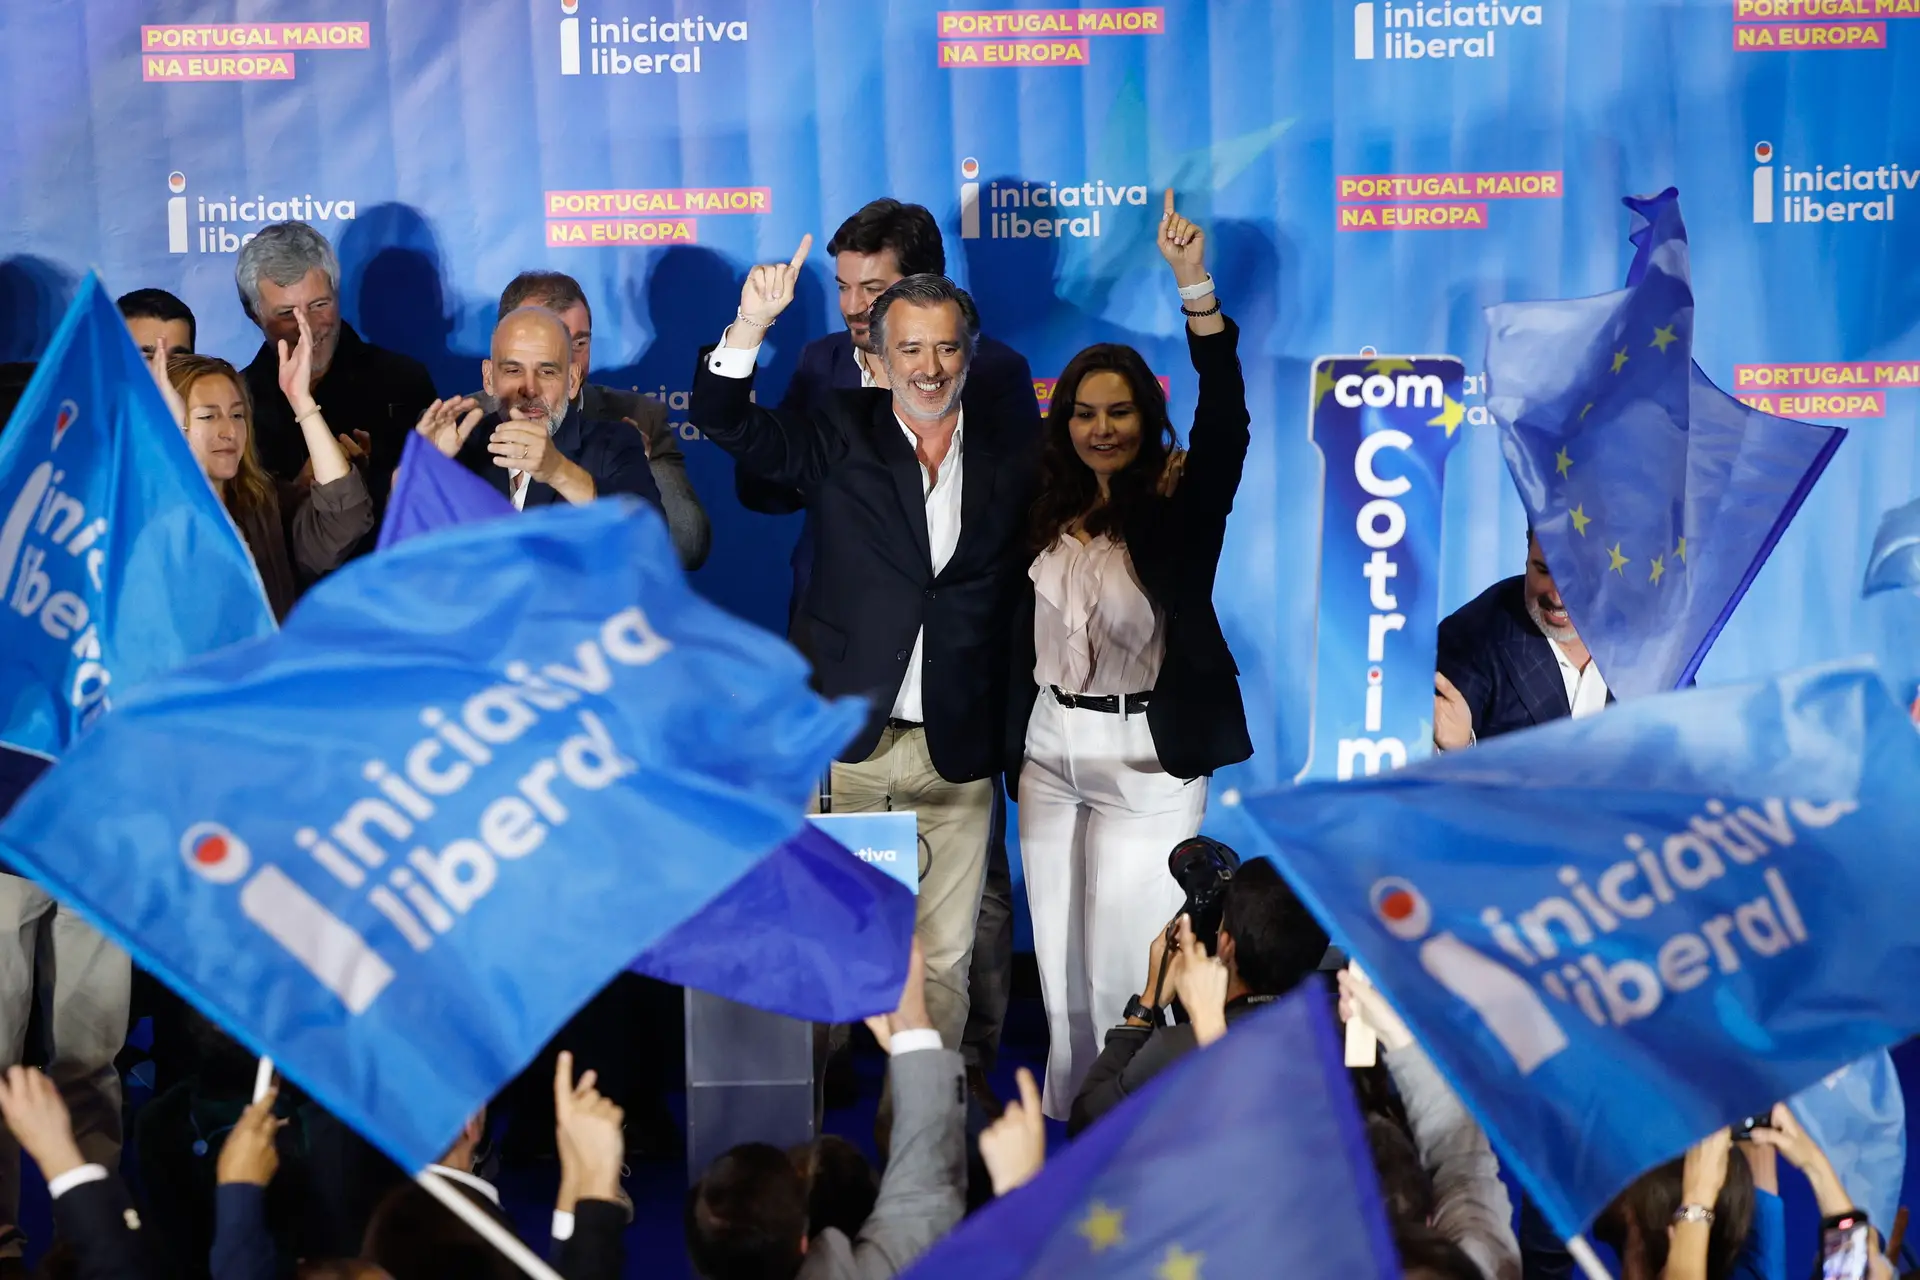 Lors de ces élections européennes, c’est l’Initiative Libérale qui a remporté la victoire la plus éclatante.